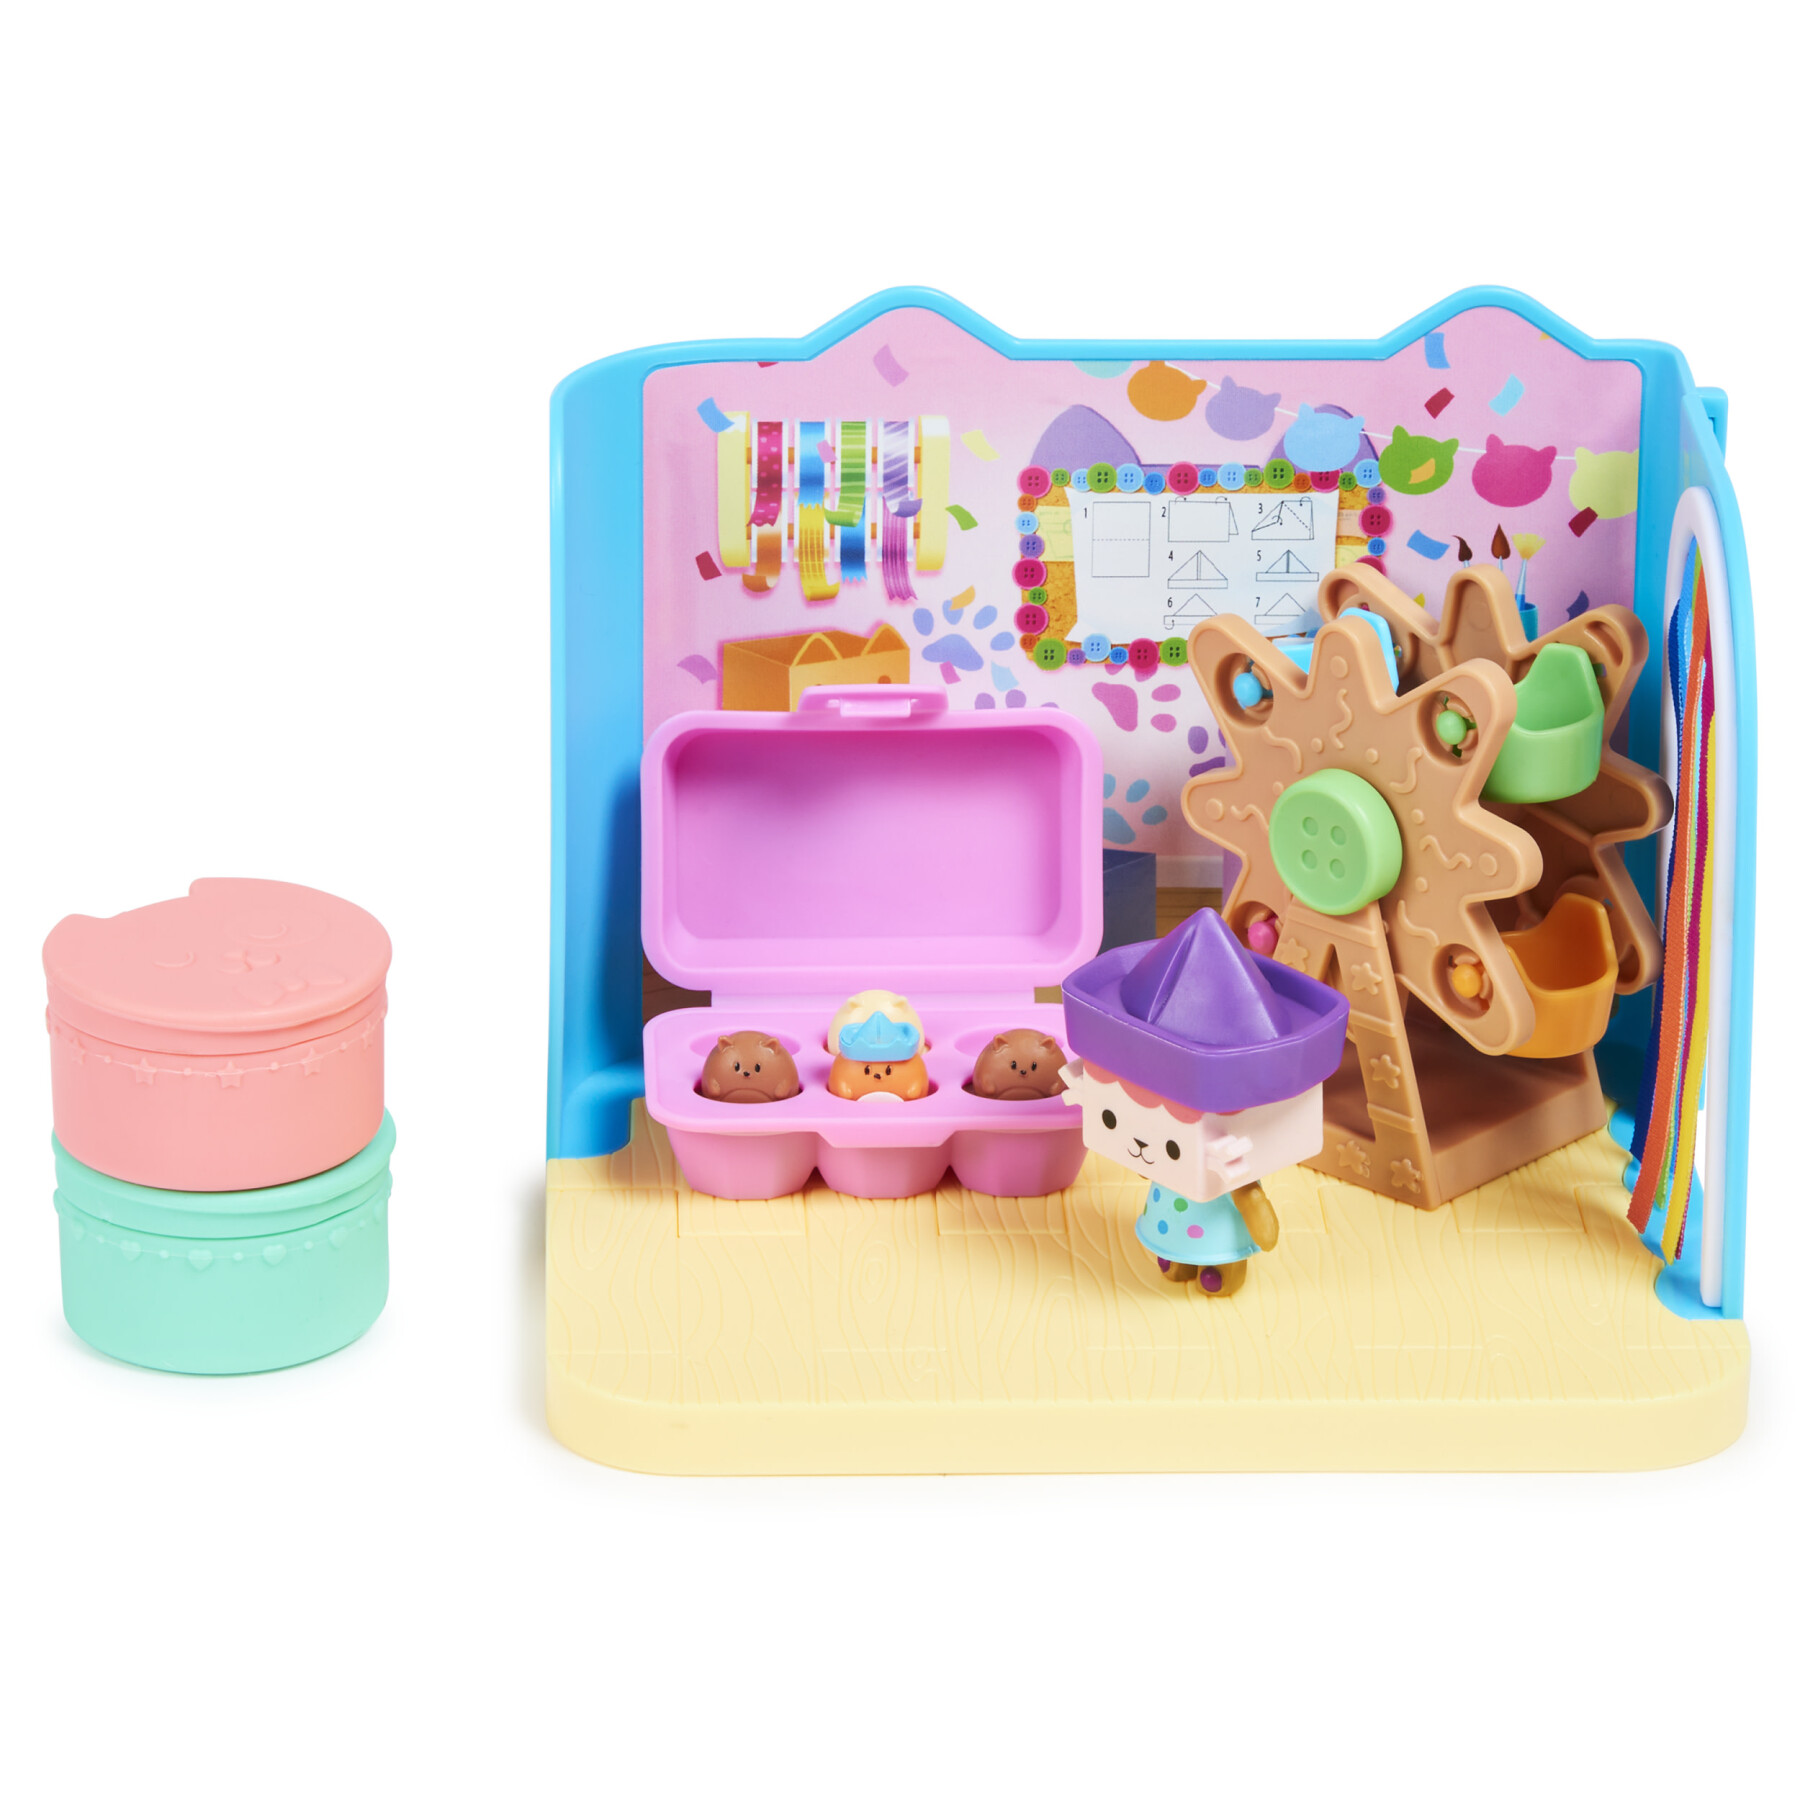 Gabby's dollhouse, stanza baby box craft-a-riffic con il personaggio gatto baby scatola, accessori, mobili e scatole con sorpresa, per bambini dai 3 anni in su - GABBY'S DOLLHOUSE